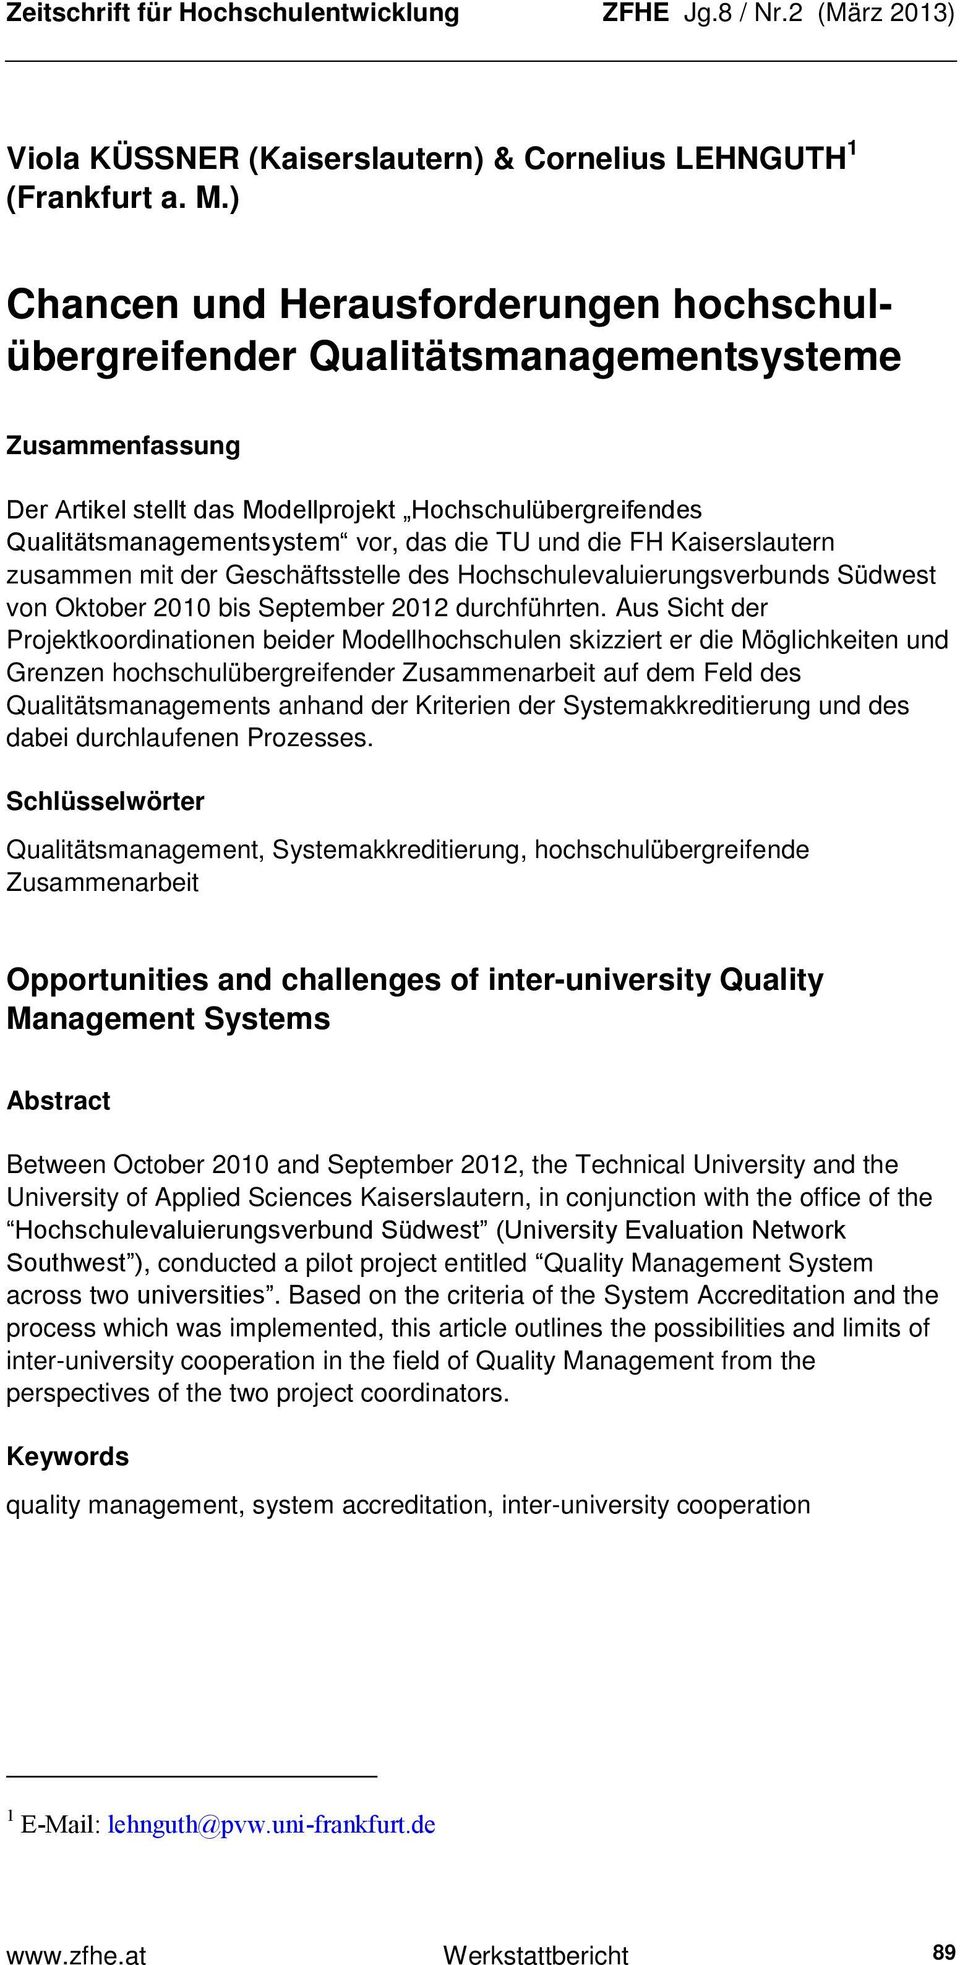 TU und die FH Kaiserslautern zusammen mit der Geschäftsstelle des Hochschulevaluierungsverbunds Südwest von Oktober 2010 bis September 2012 durchführten.